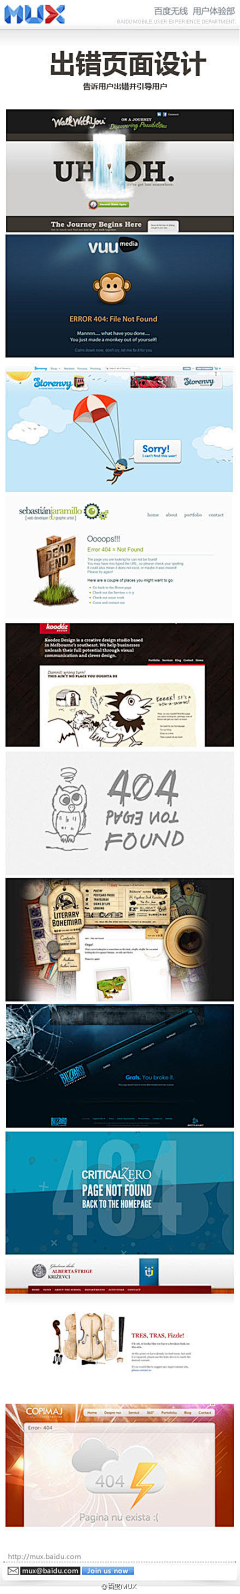 S-噔嘞个噔采集到404